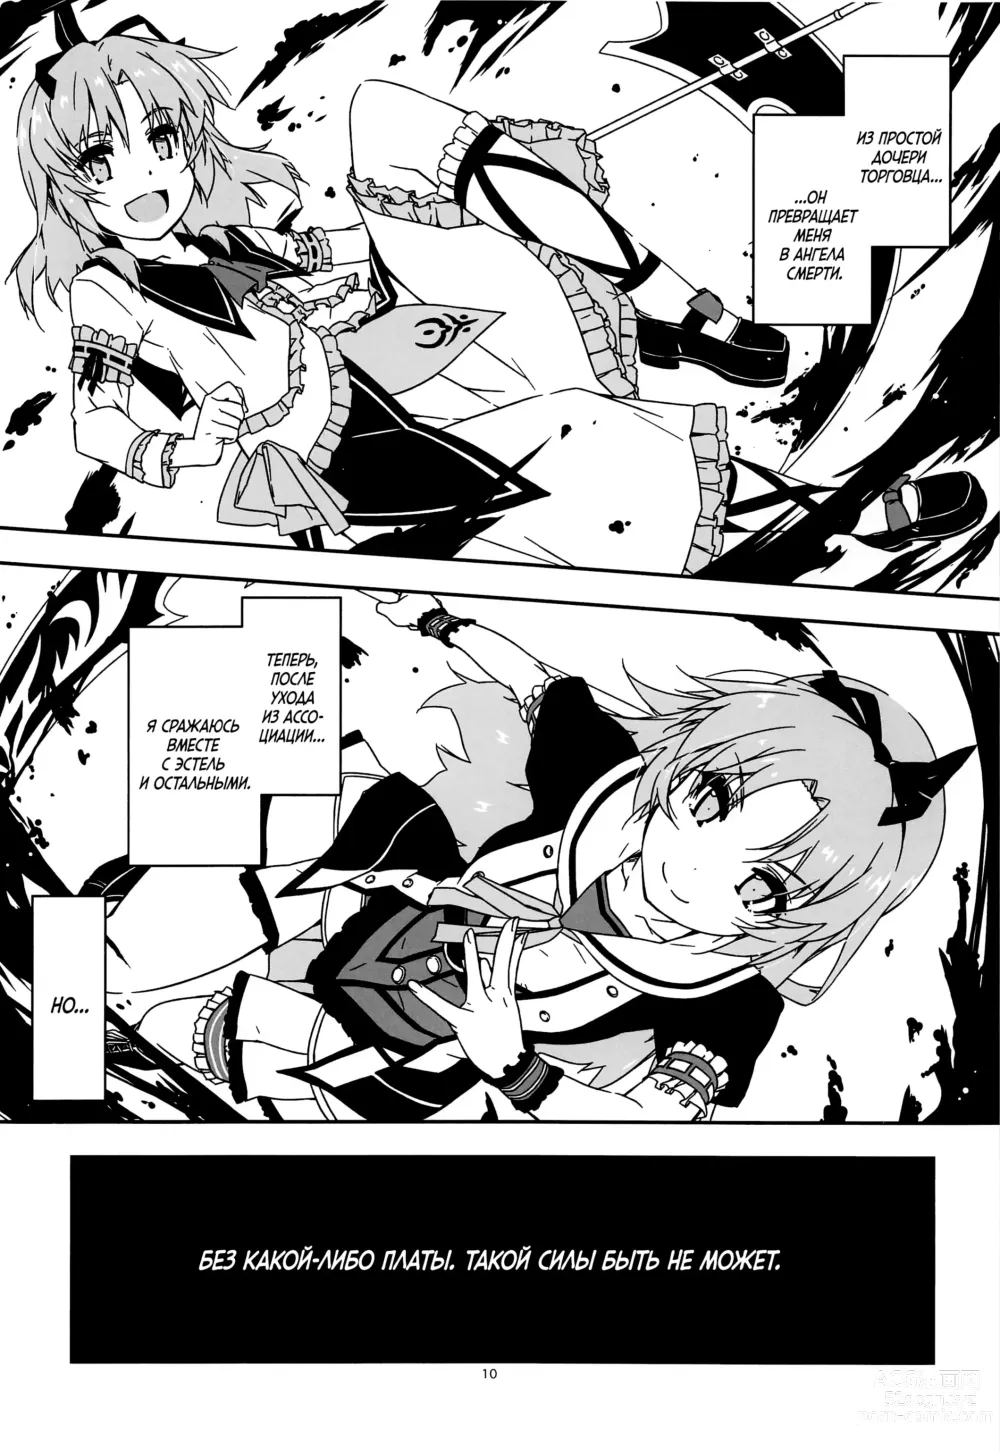 Page 9 of doujinshi Koko ni Rakuen o Tateyou!